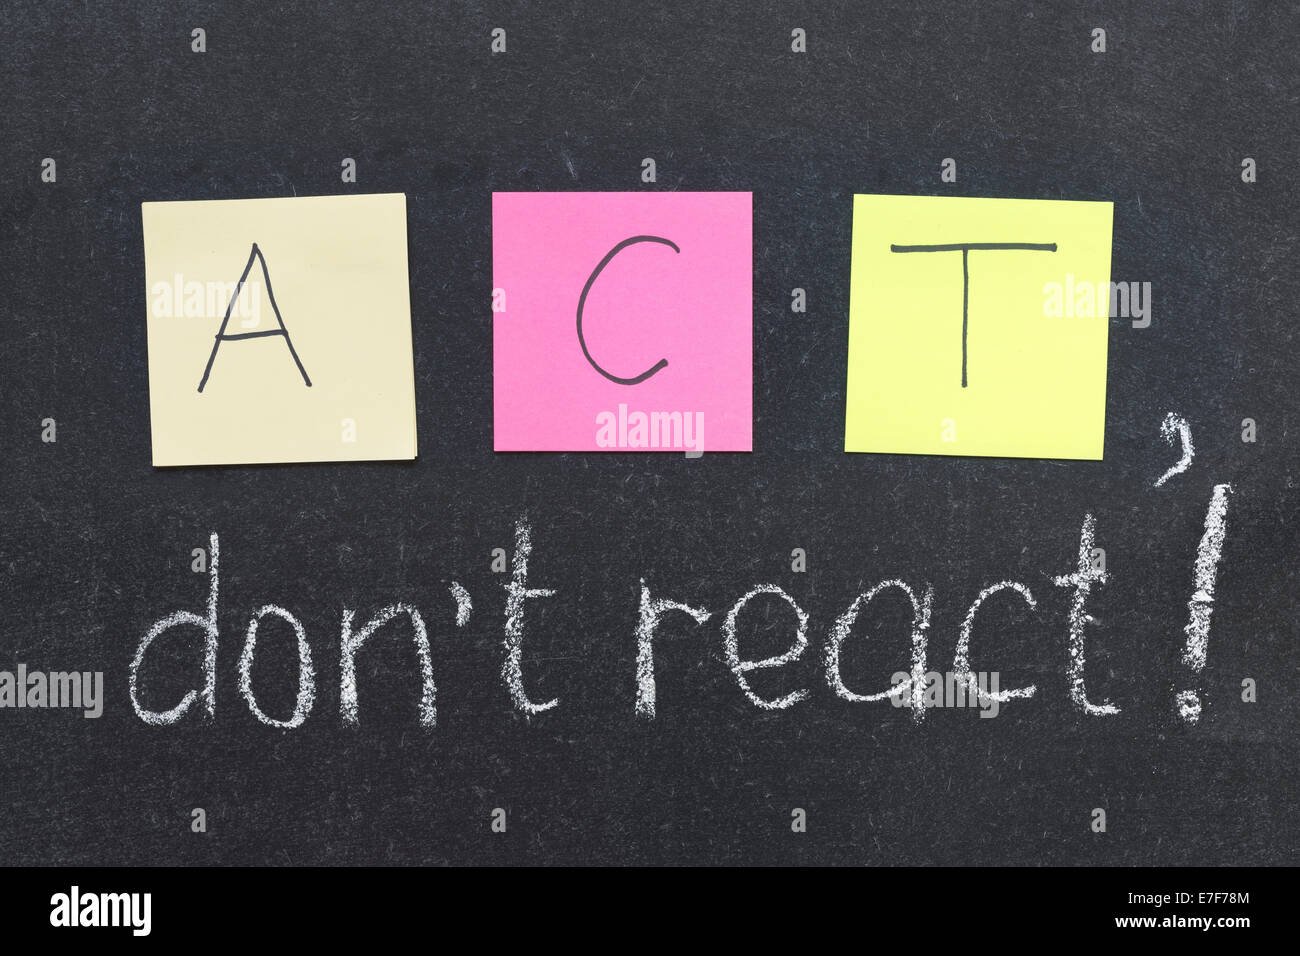 ACT, do not react phrase handwritten on blackboard Stock Photo